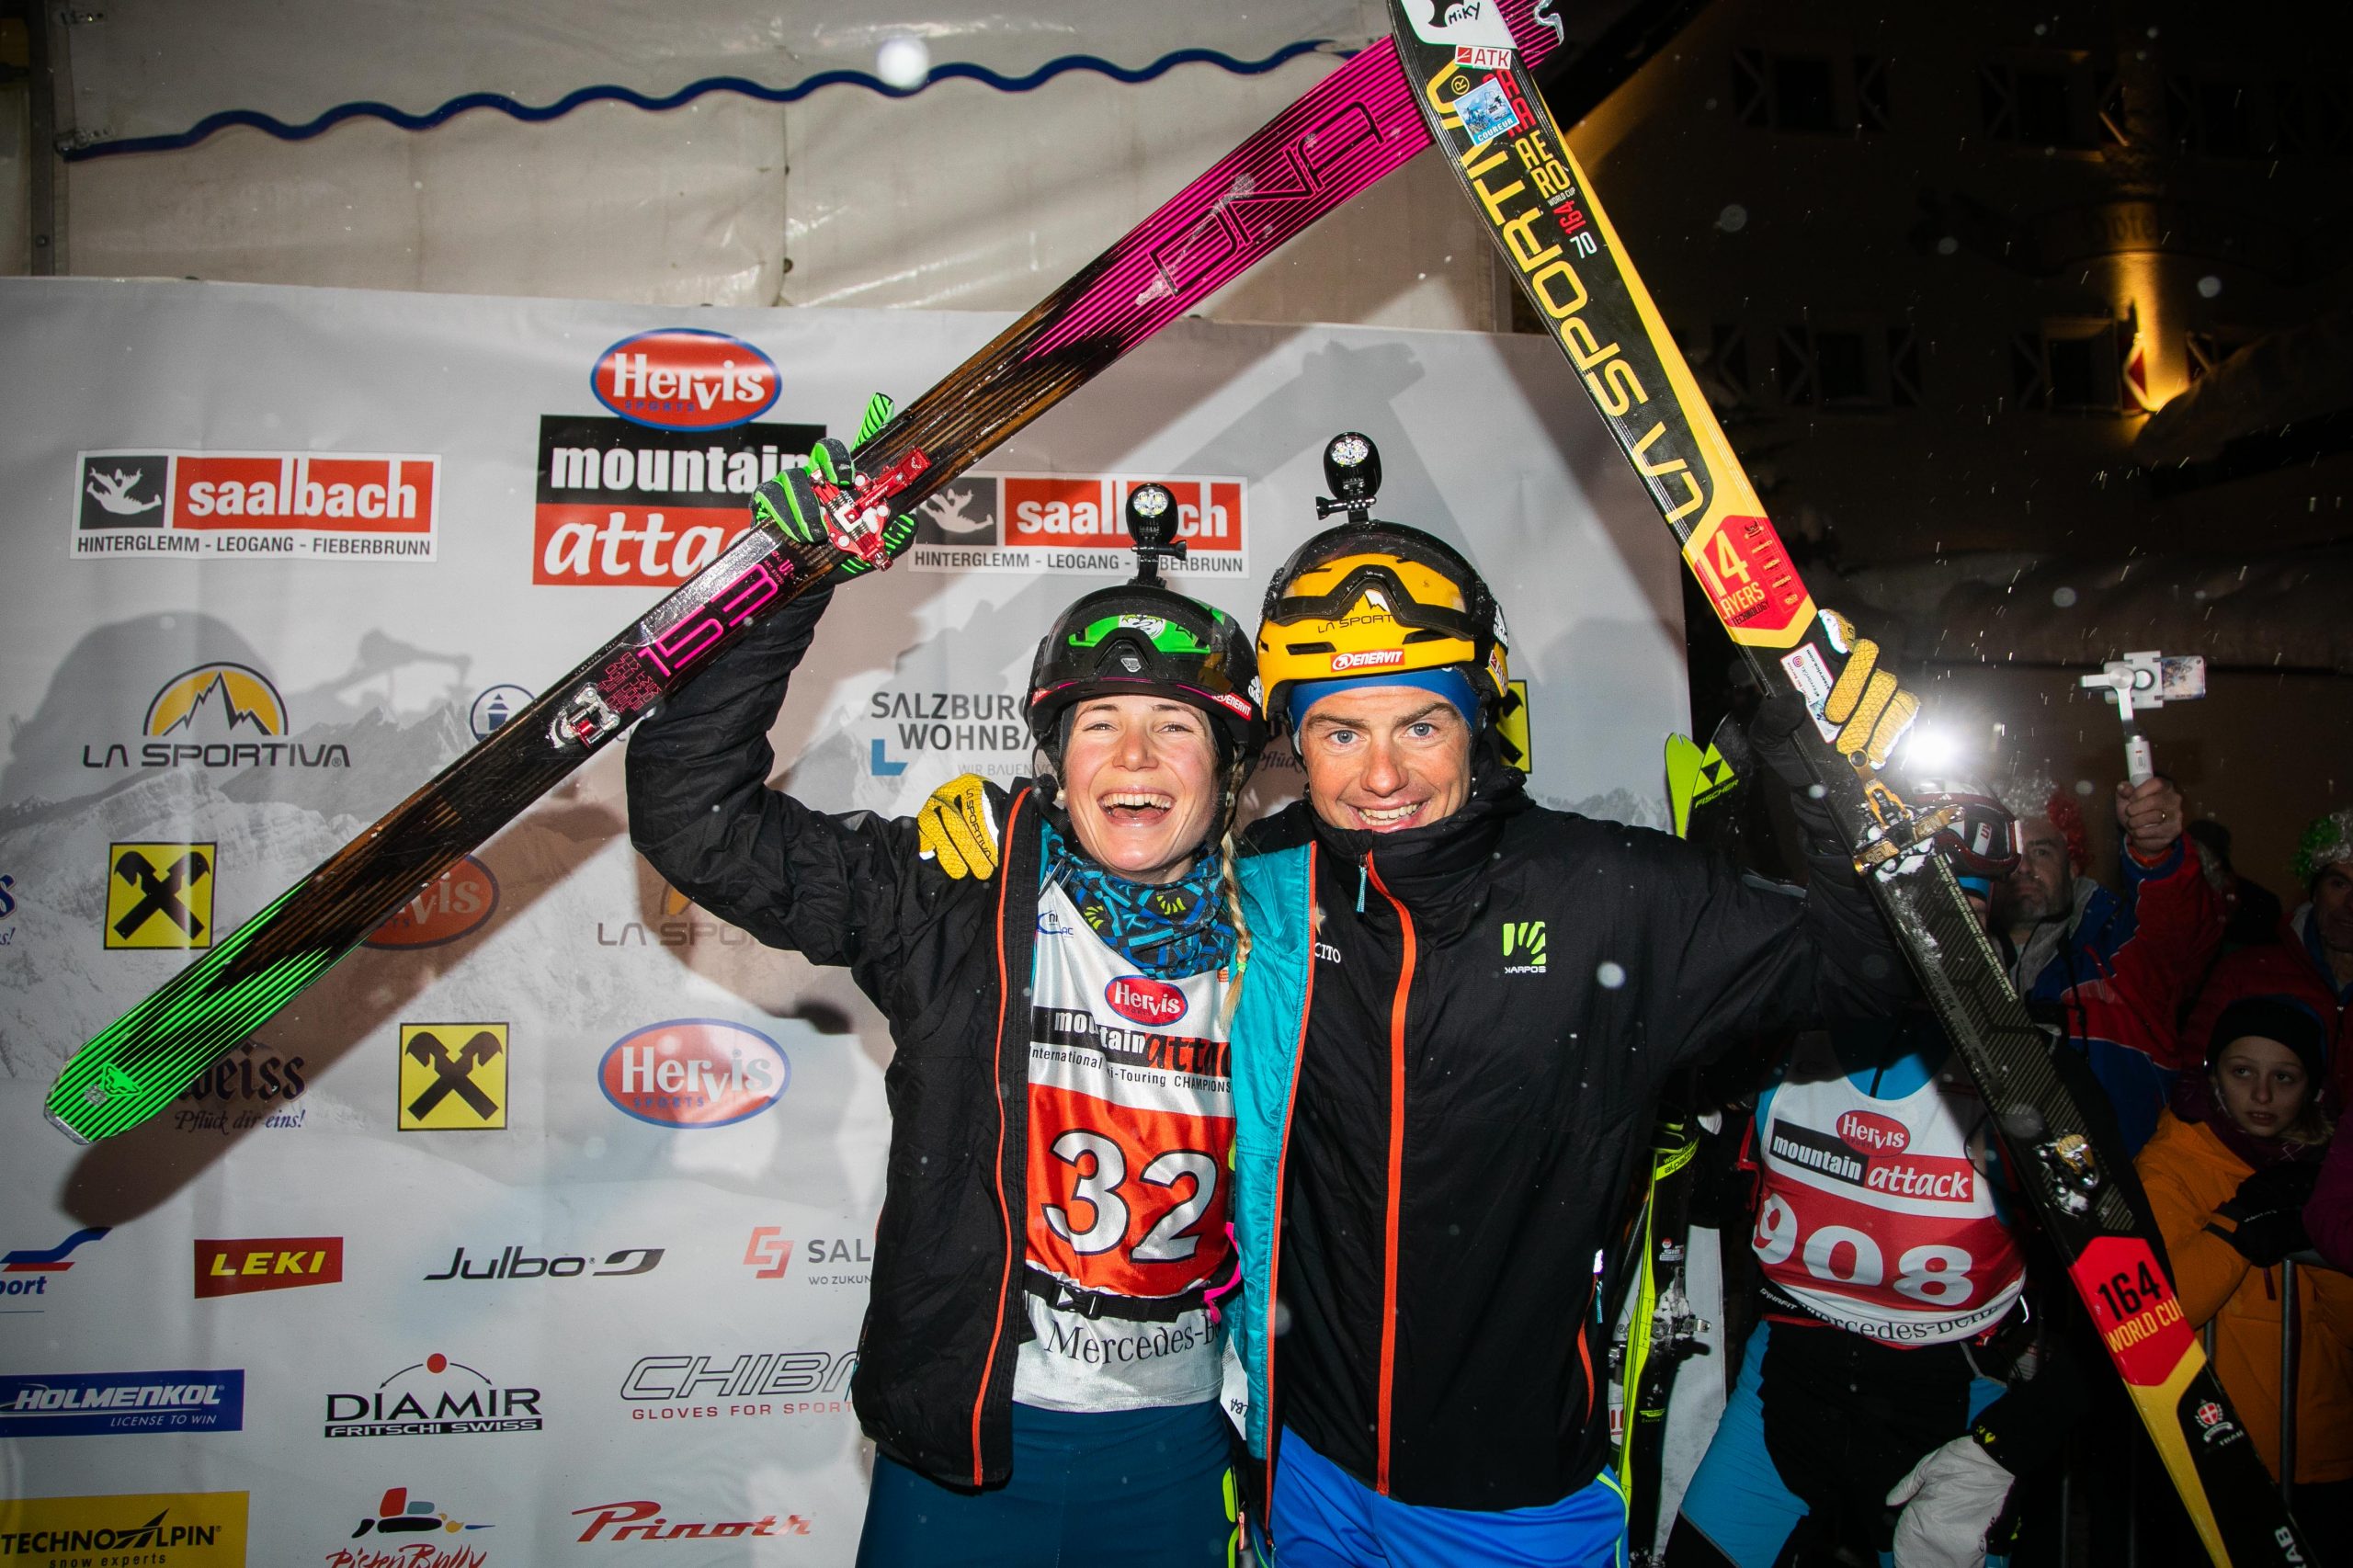 Alba De Silvestro, Michele Boscacci, Sieger Marathon, Mountain Attack 2019, Salzburg, © www.wildbild.at